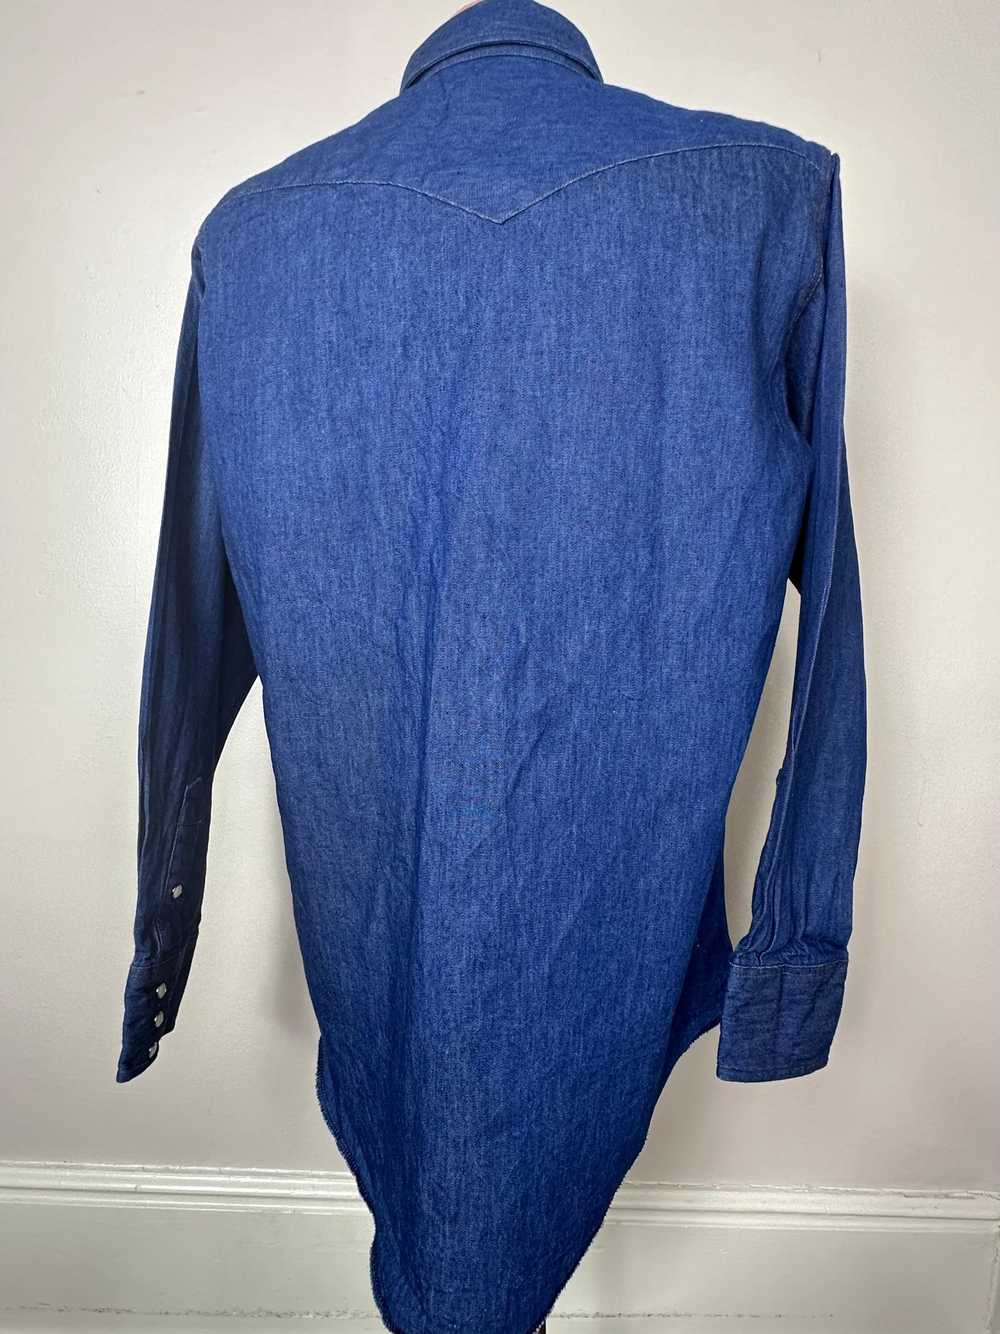 1980s Denim Western Shirt, Wrangler Size Large - image 3